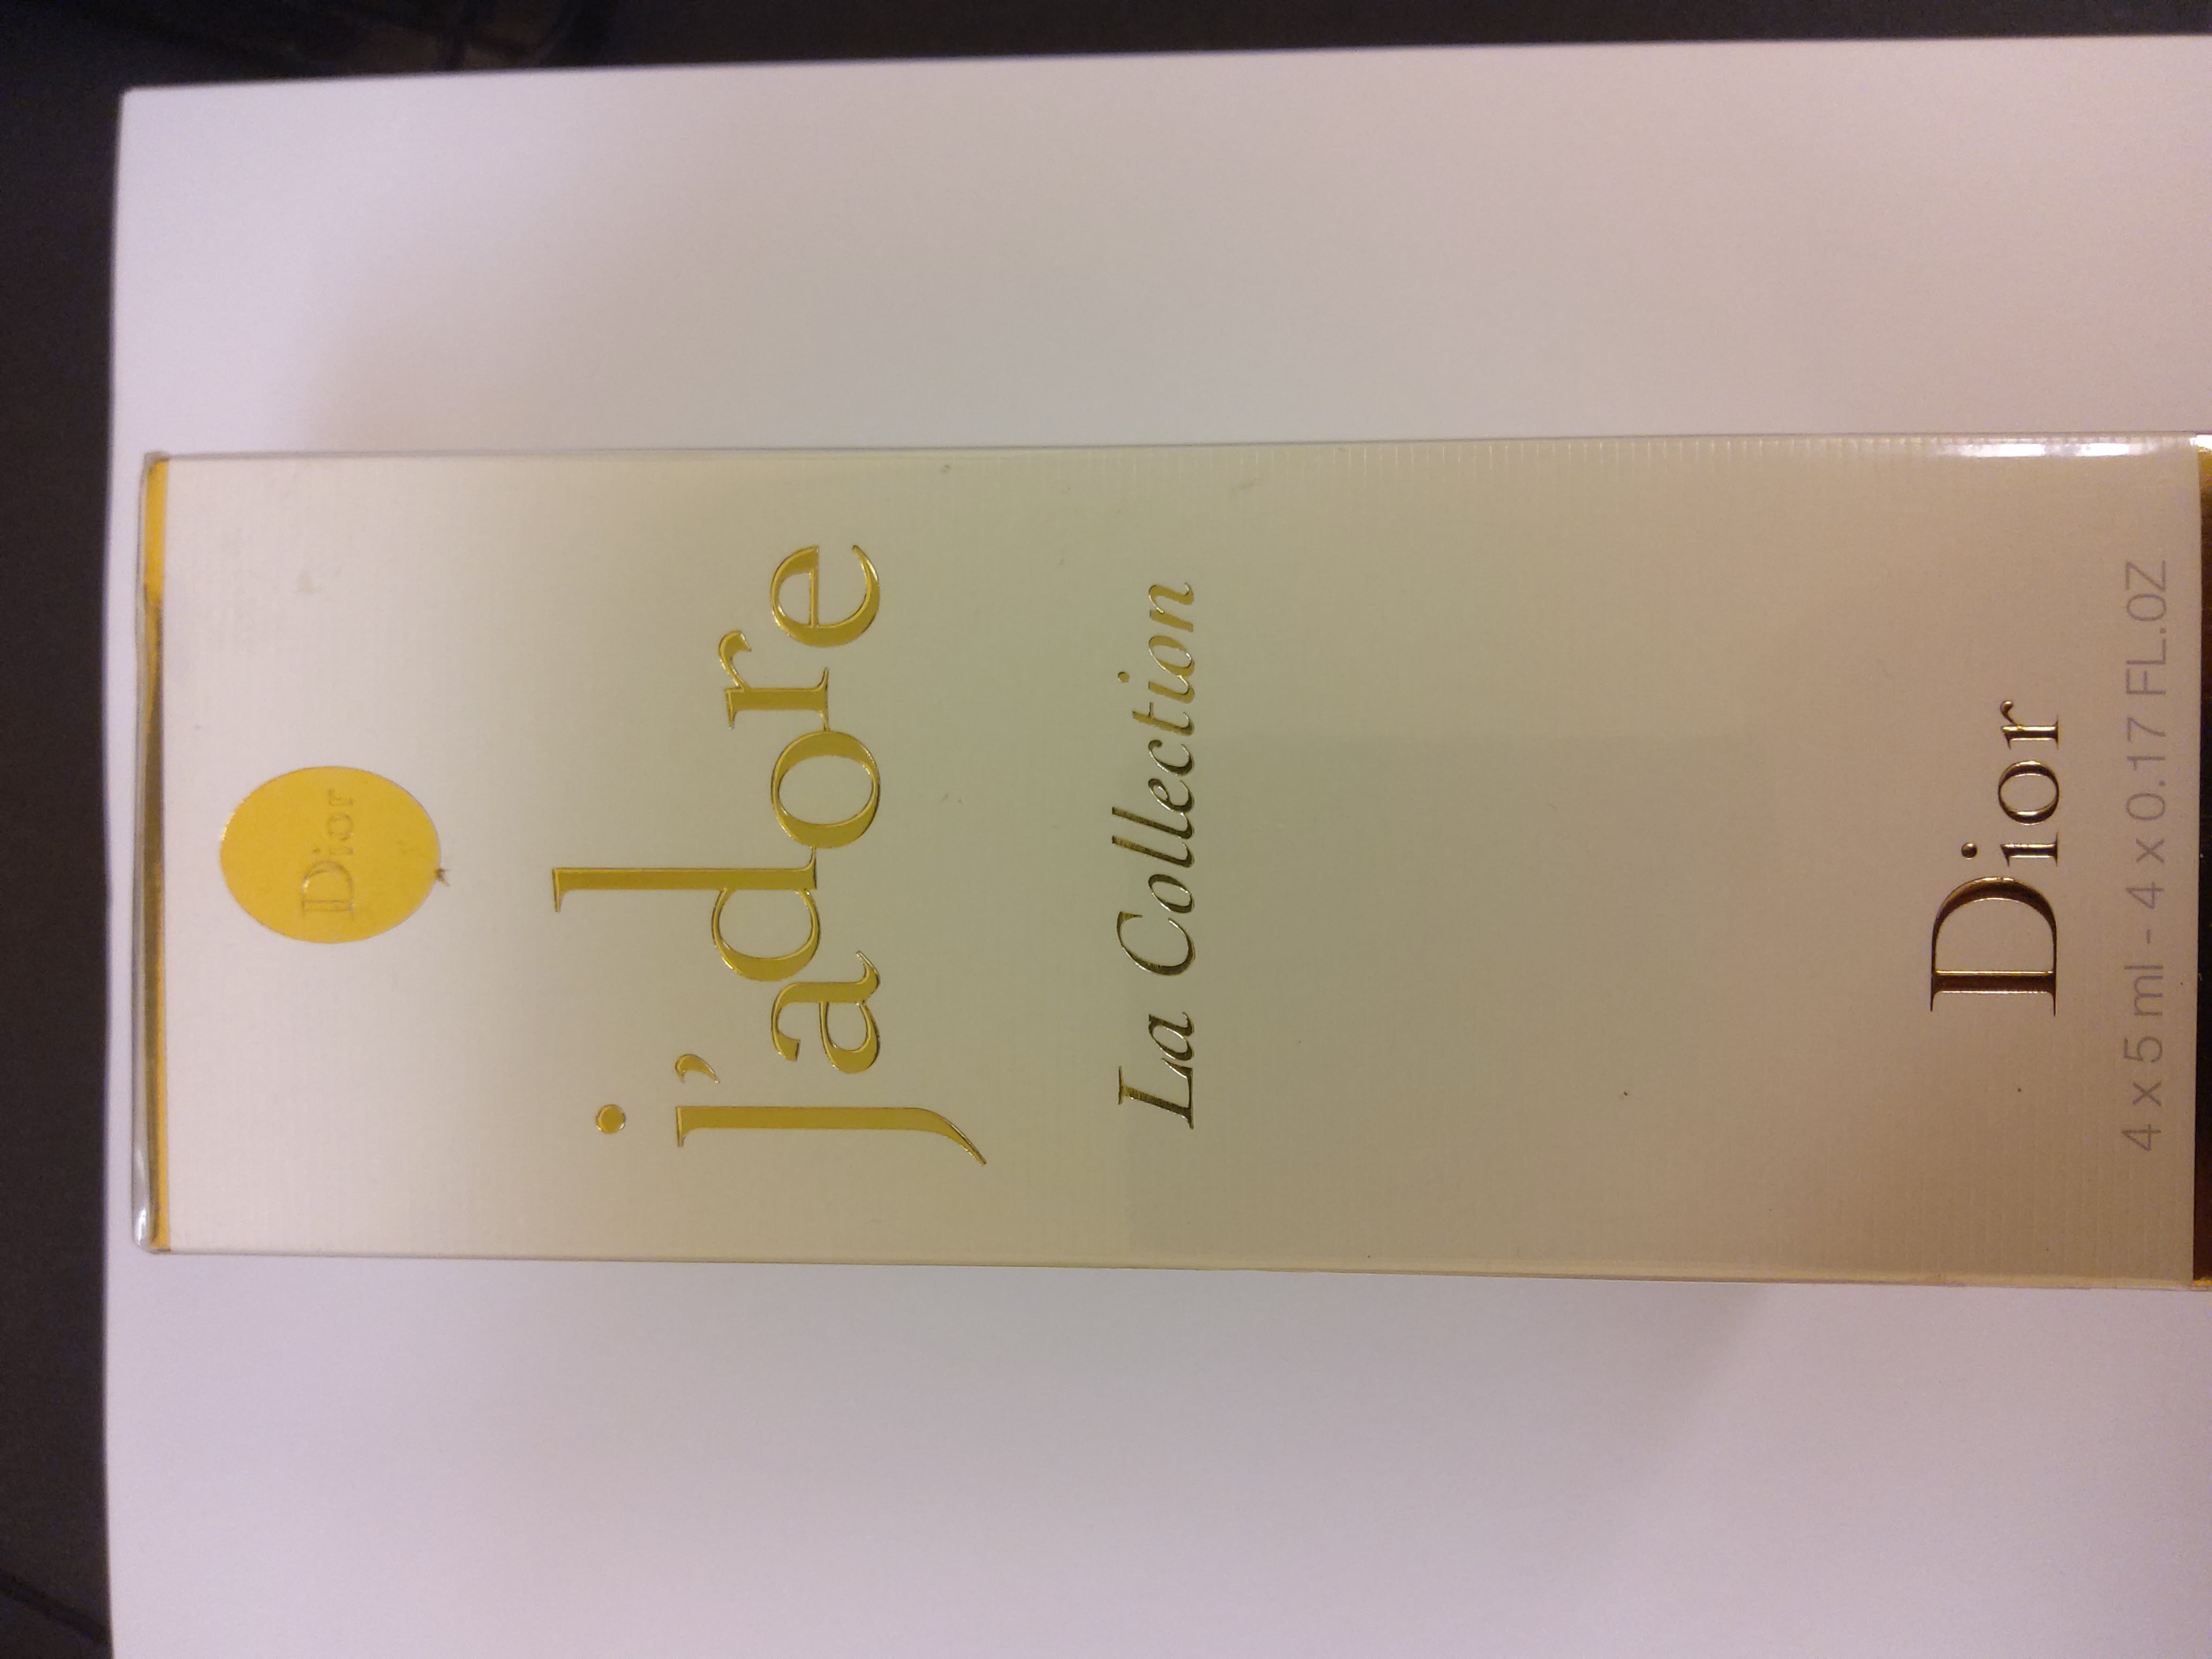 Dior J'adore Parfum d'eau Ceranmic Coffret Miniature Gift Set 5ml